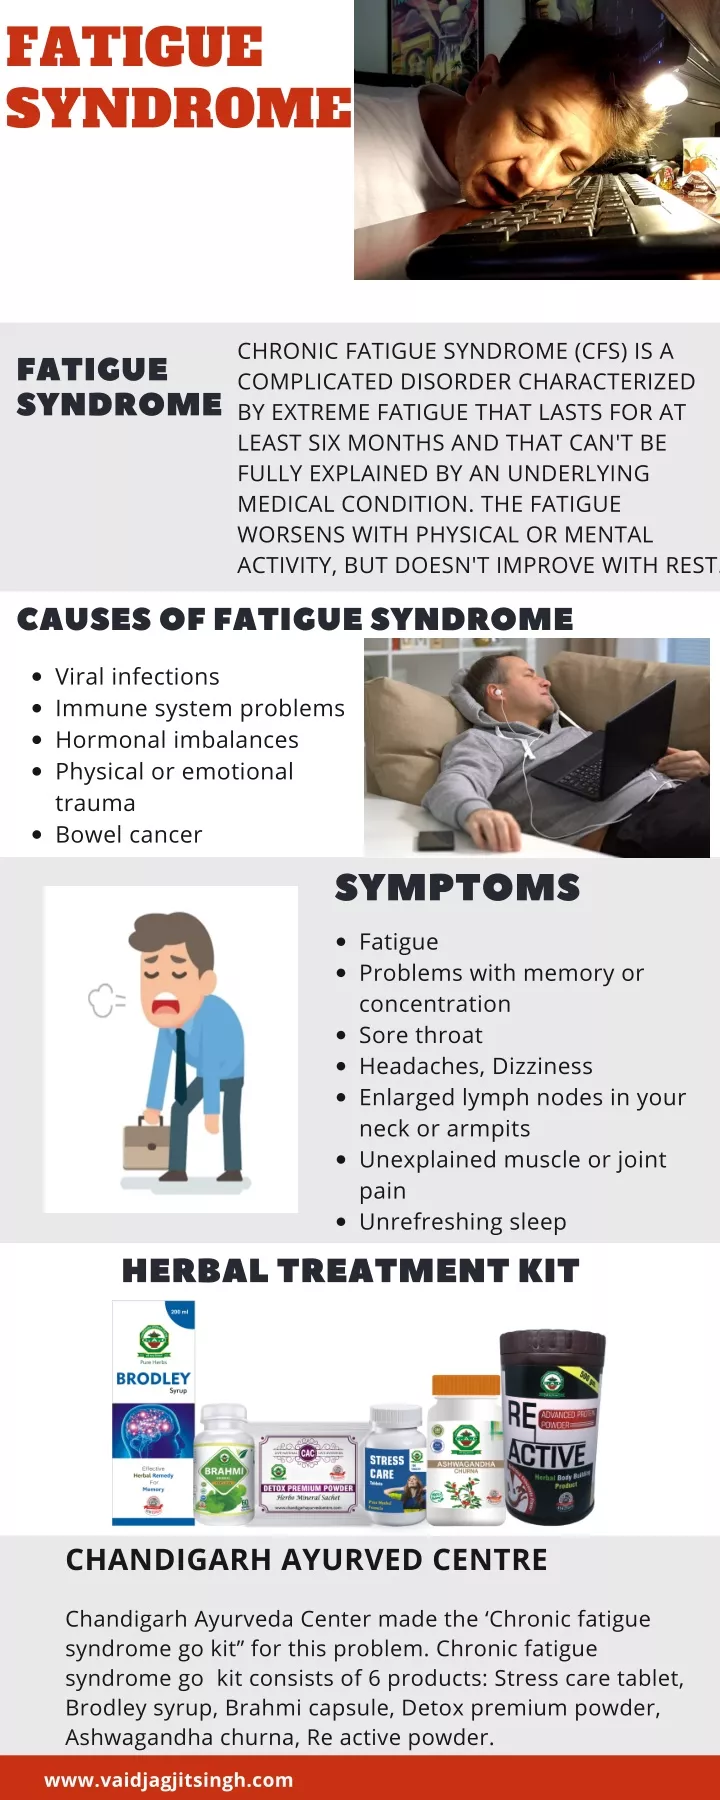 fatigue syndrome